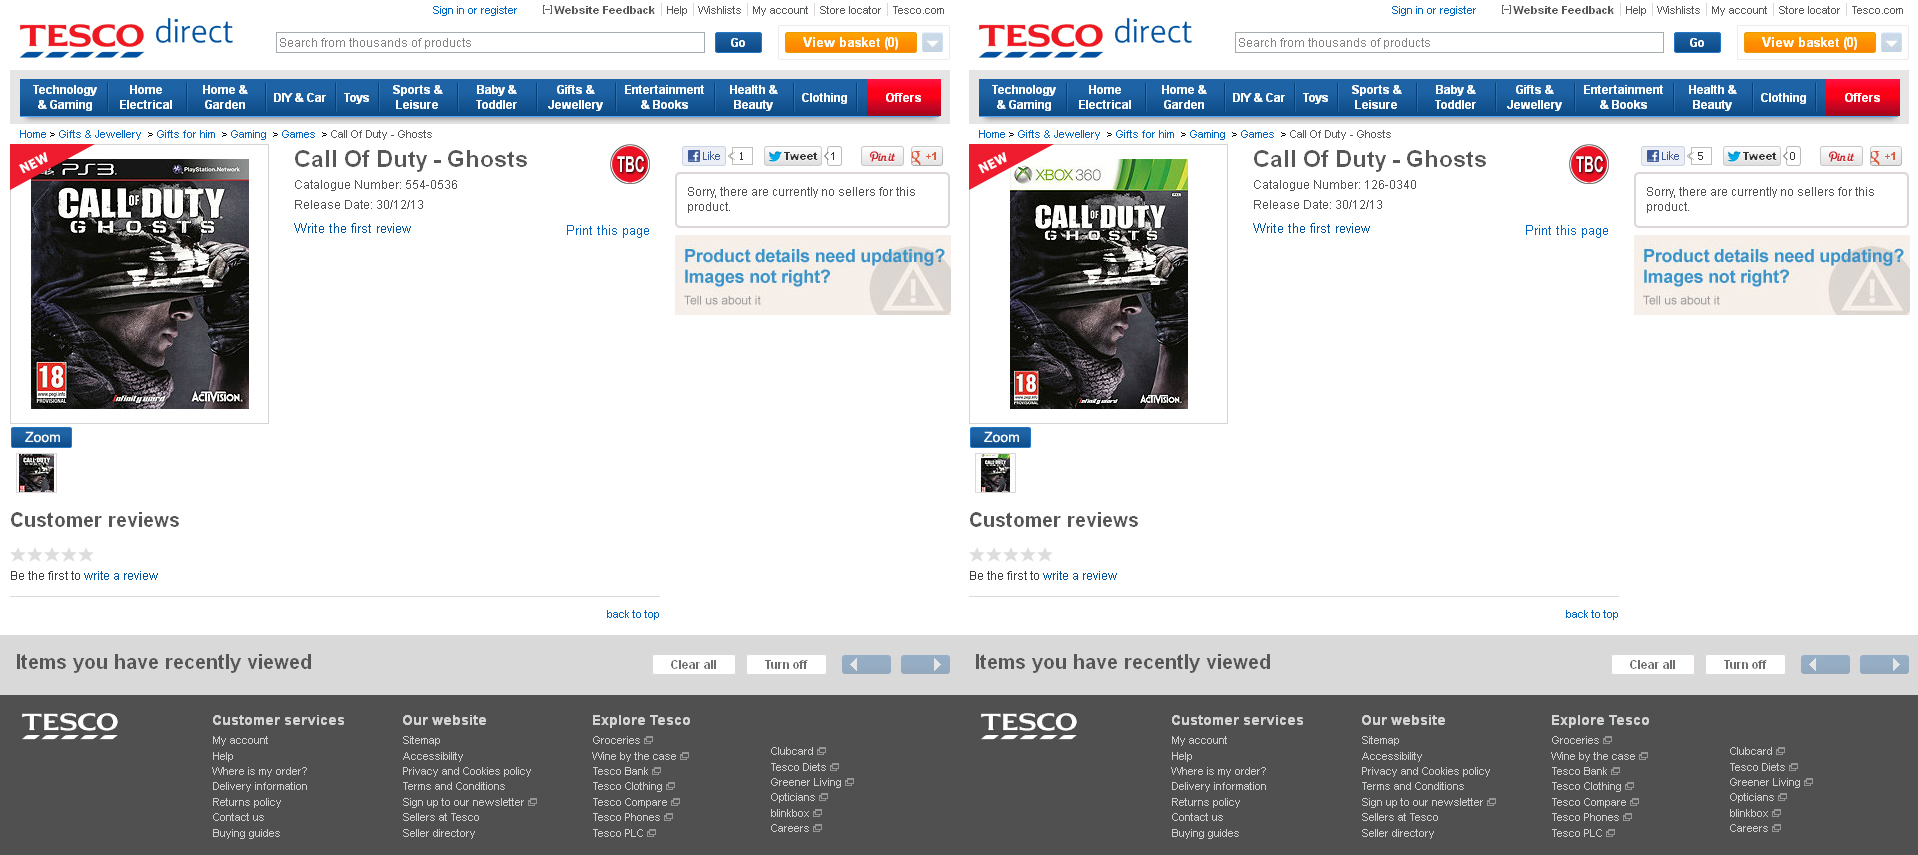 Britské Tesco zveřejnilo obal Call of Duty: Ghosts 80340